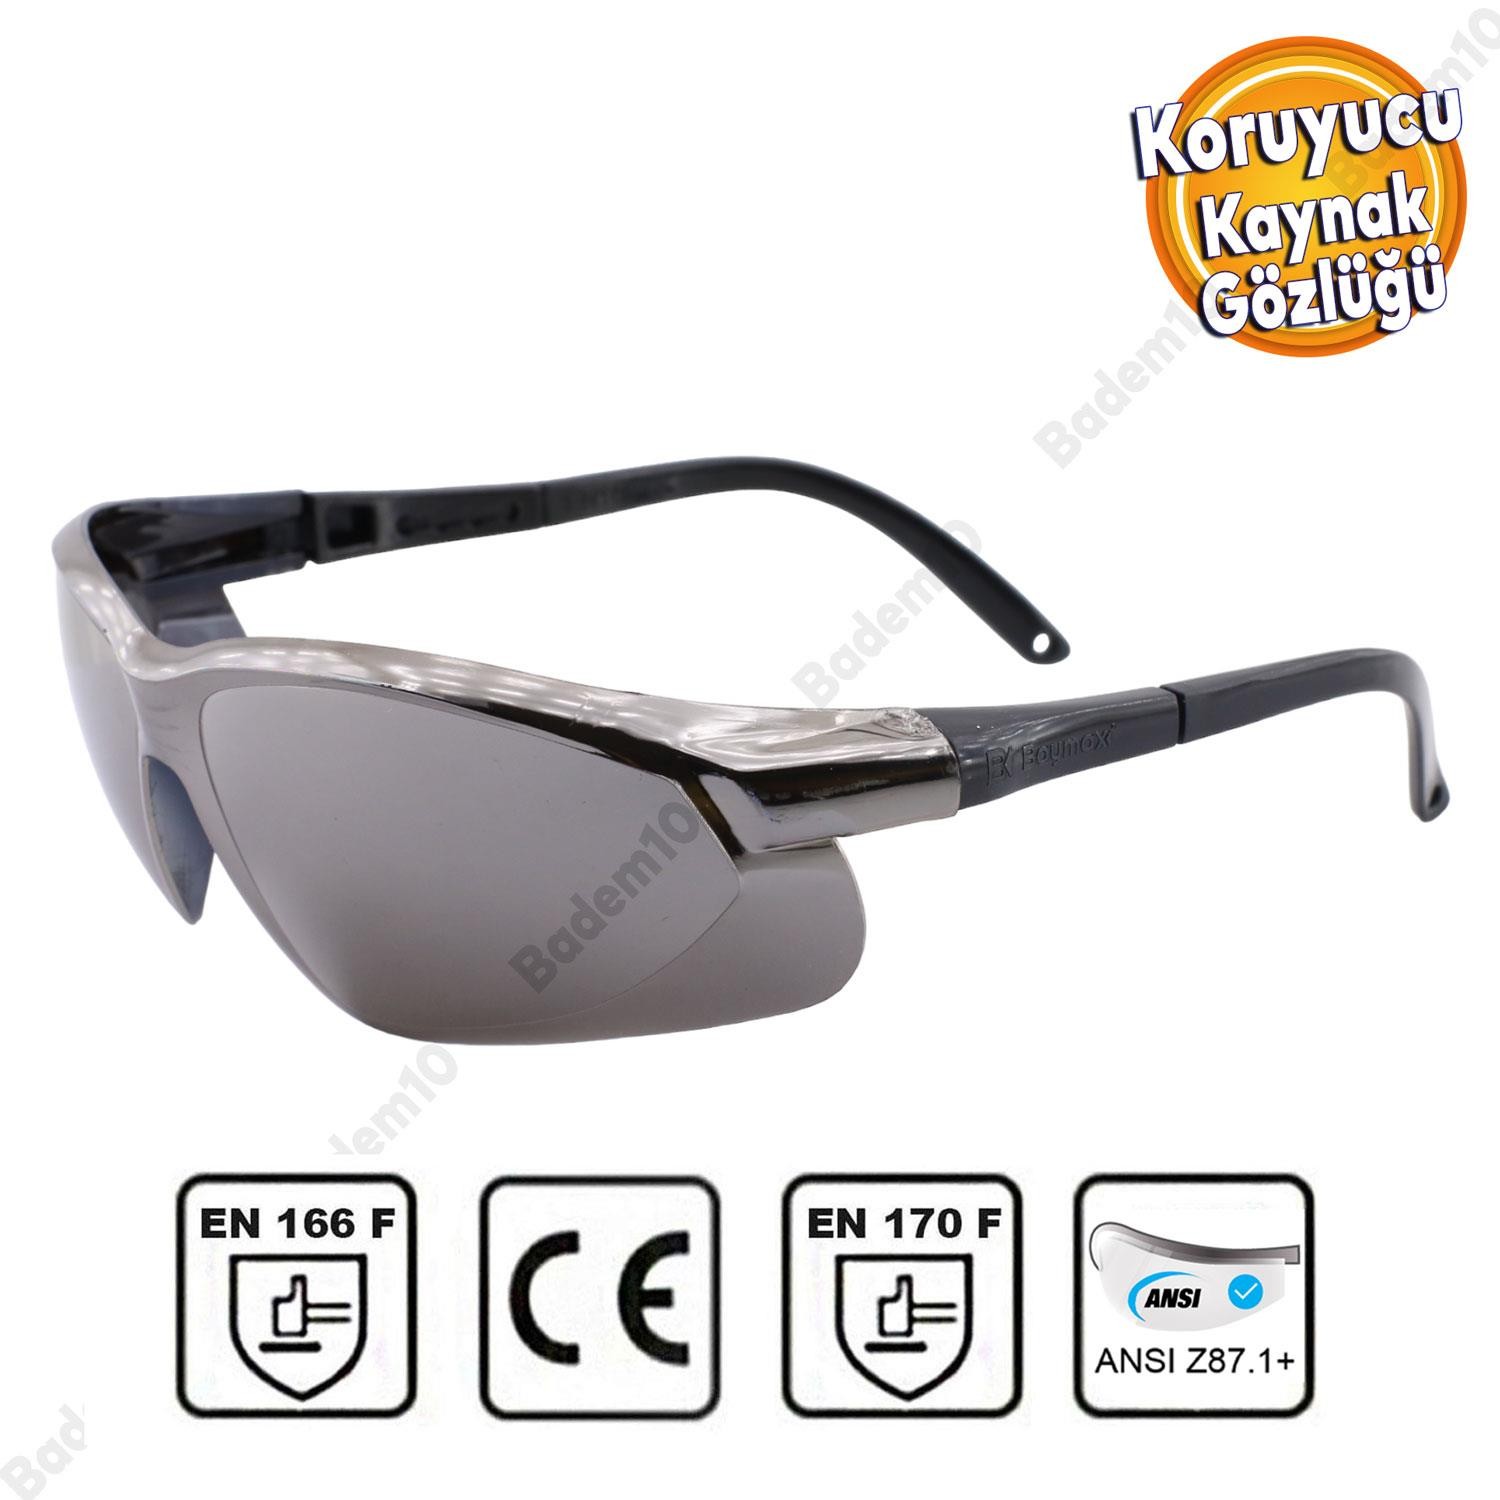 Kaynakçı Gözlüğü İş Güvenlik Kaynak Gözlüğü Lazer UV Koruyucu Gözlük S900 Aynalı Gümüş